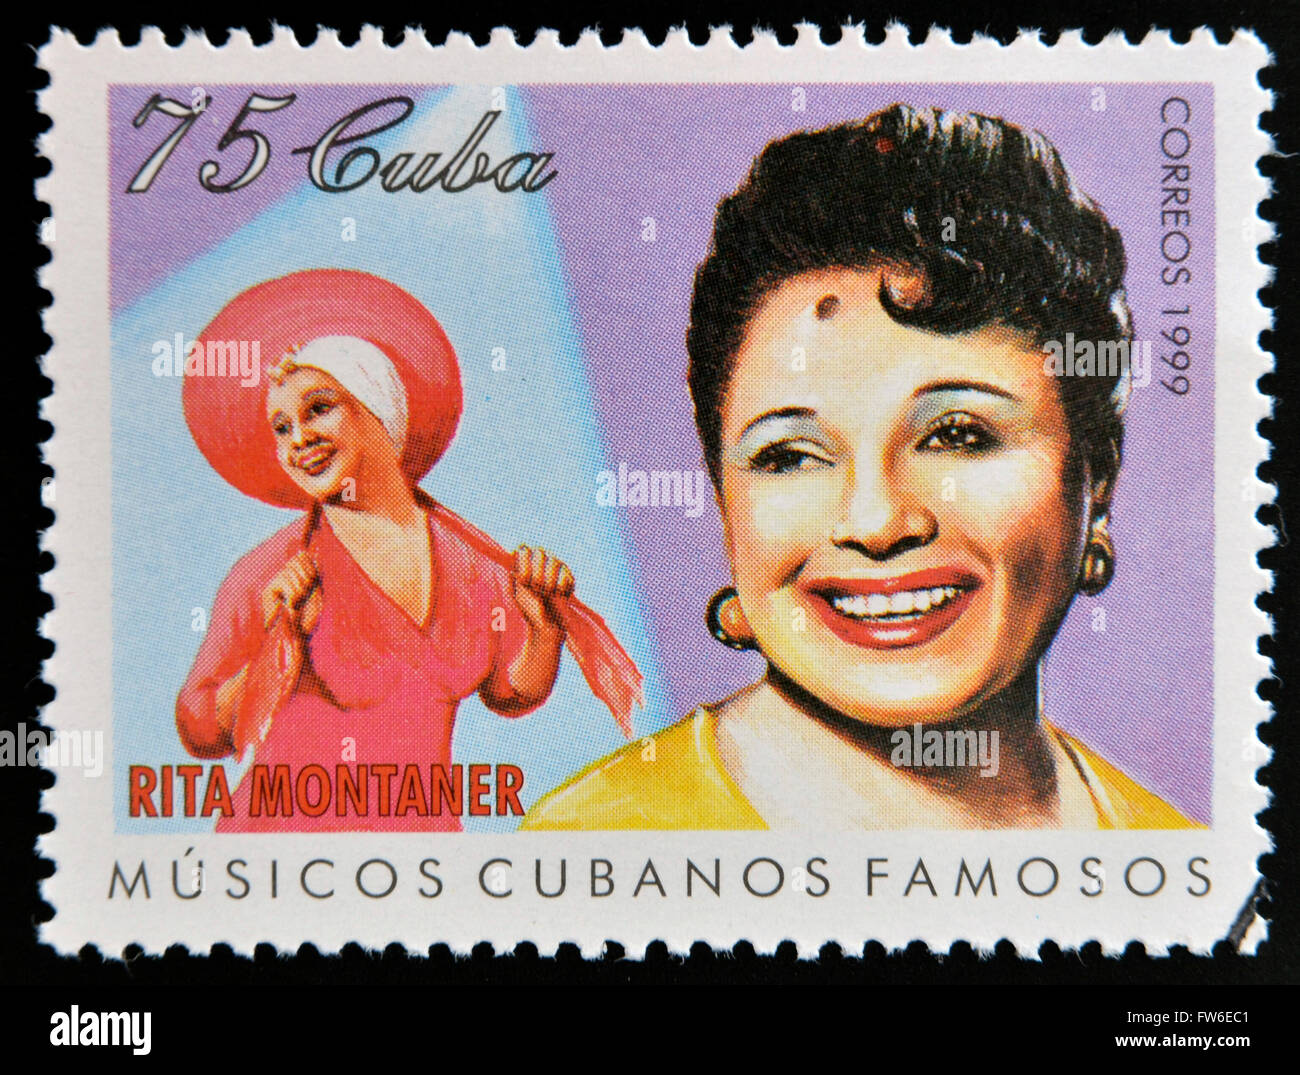 CUBA - VERS 1999 : un timbre imprimé en cuba dédié au célèbre musiciens cubains, indique Rita Montaner, vers 1999 Banque D'Images